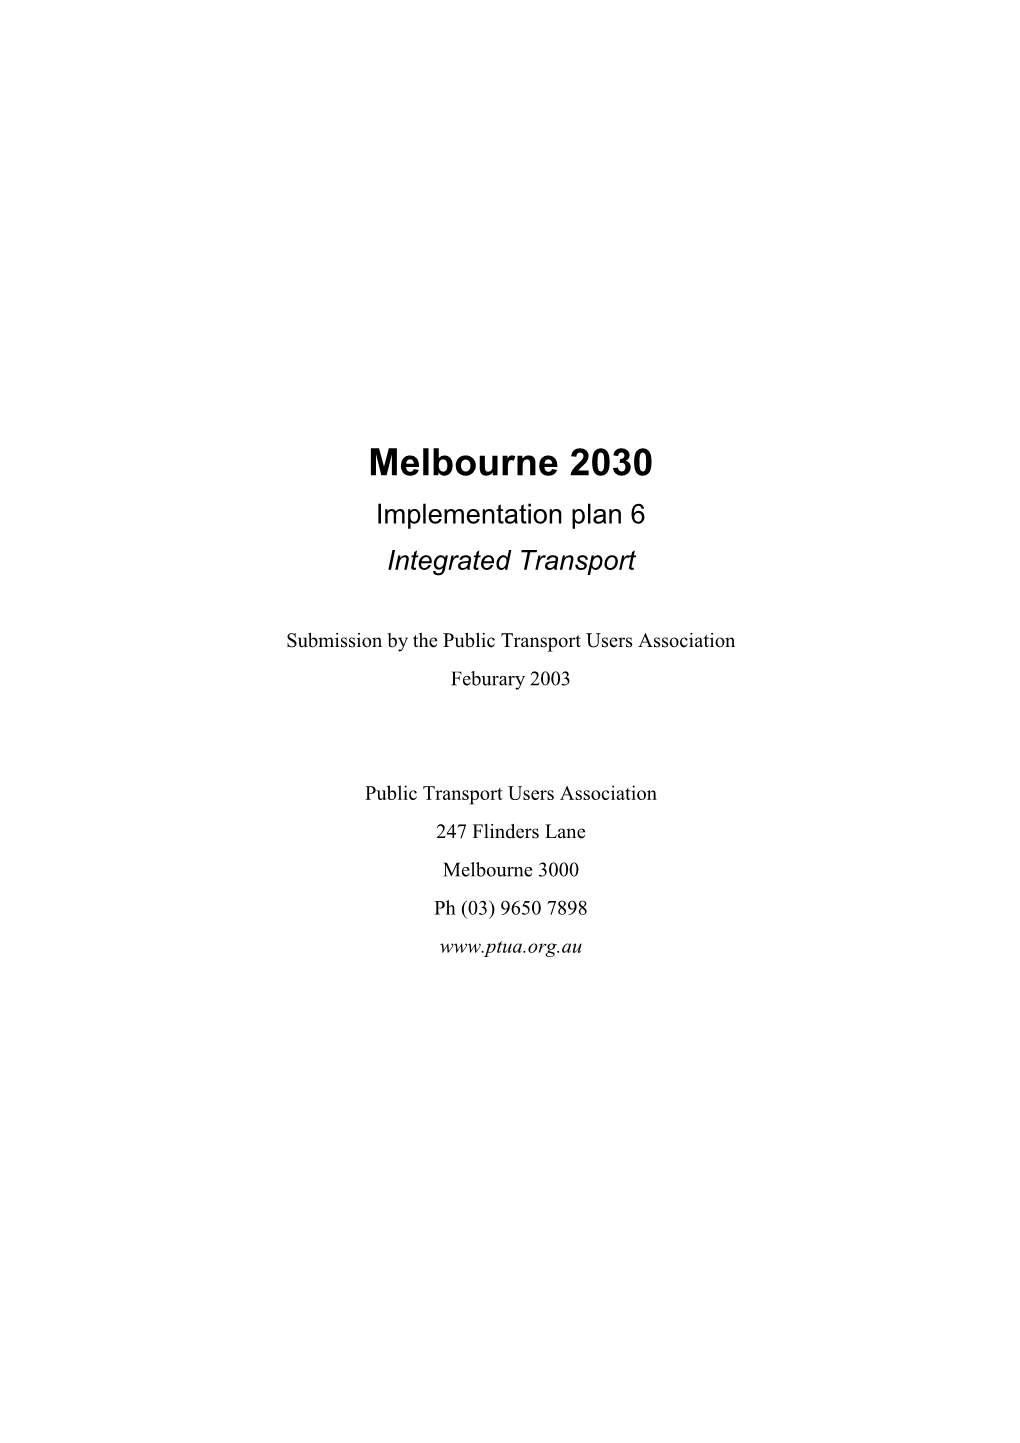 Melbourne 2030: Integrated Transport